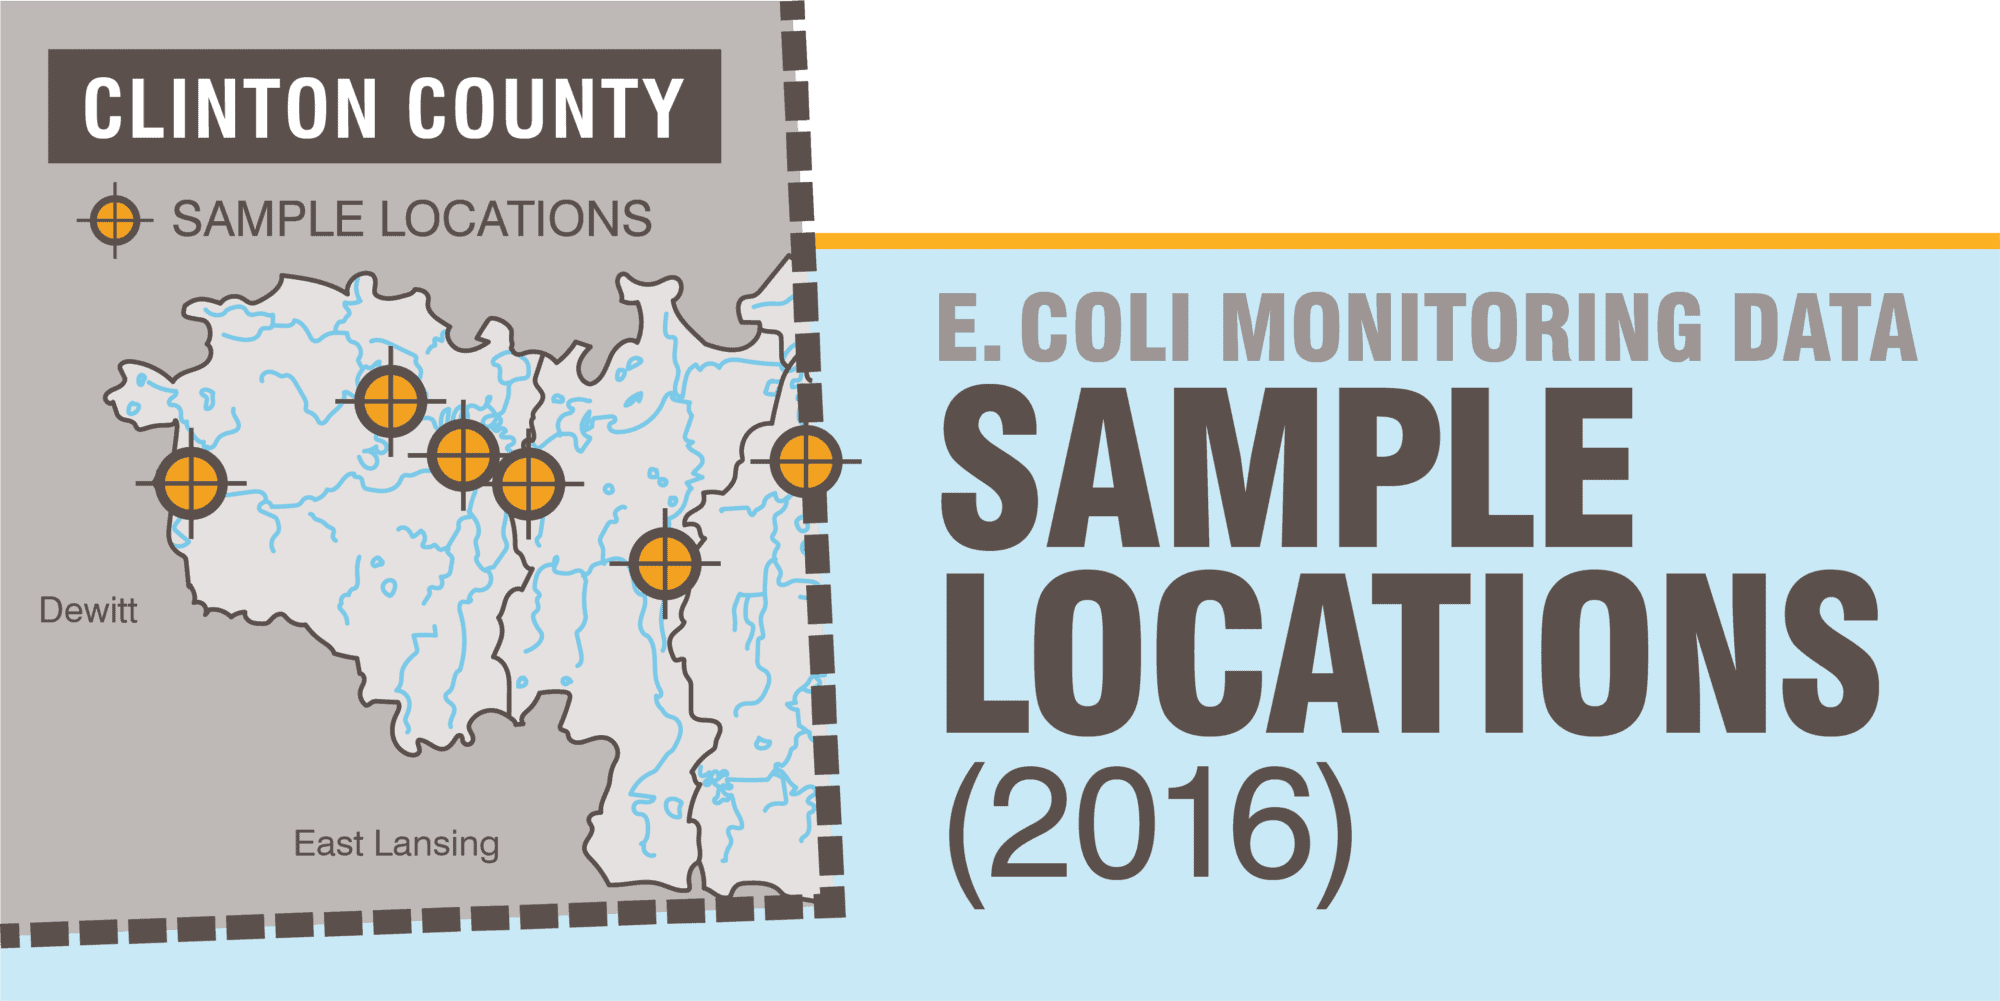 E. Coli Monitoring Data of Sample Locations in Clinton County